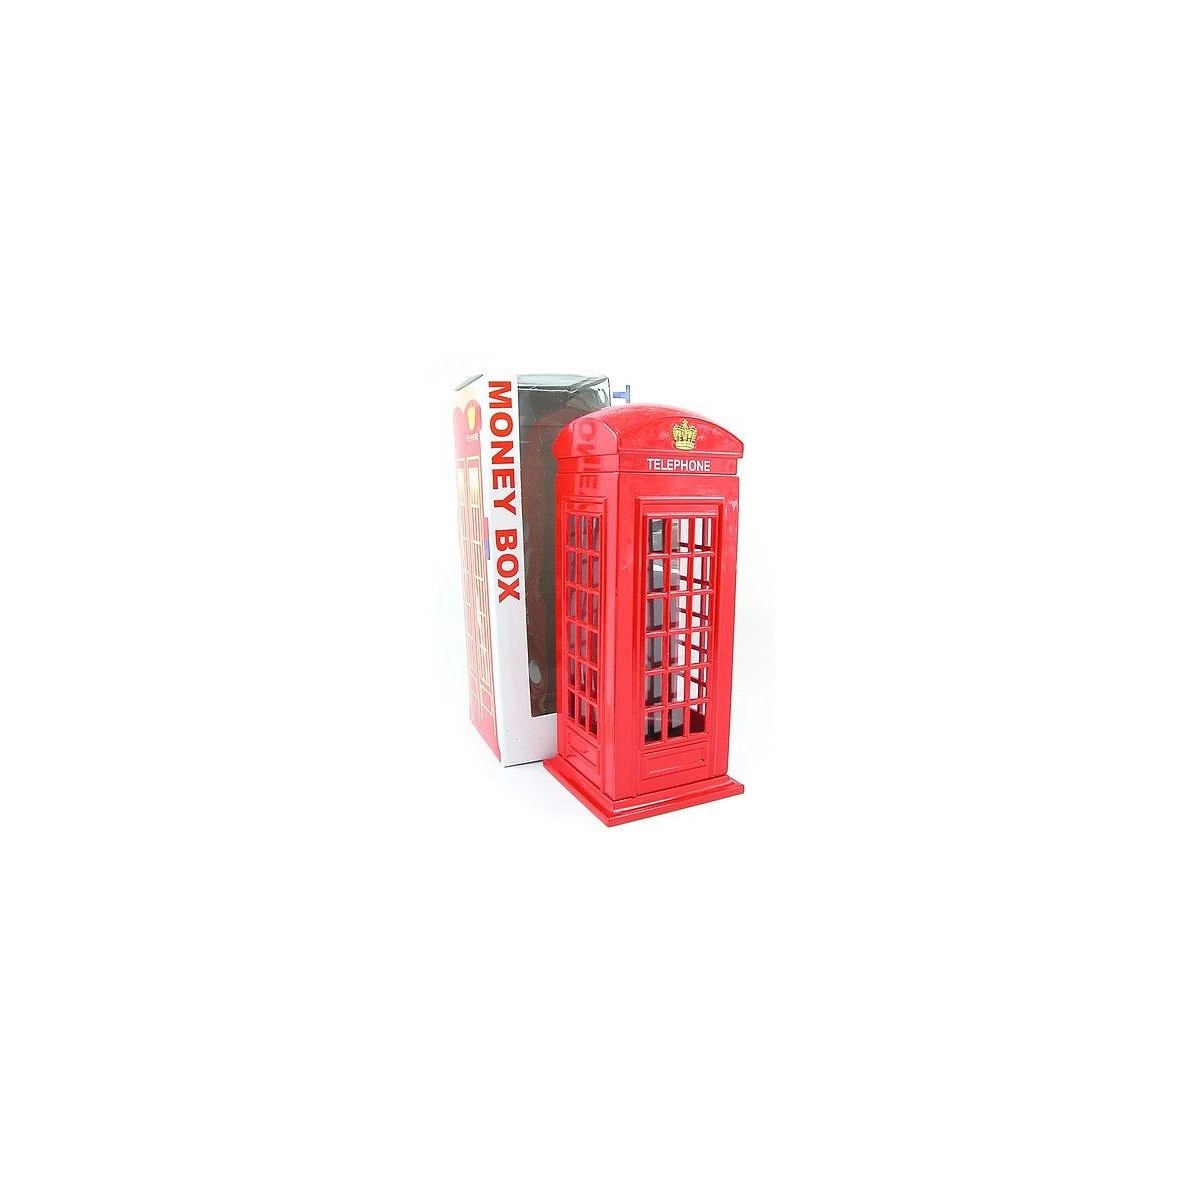 Londra Souvenir metallo pressofuso con parti in plastica Red Telephone Box Money Box